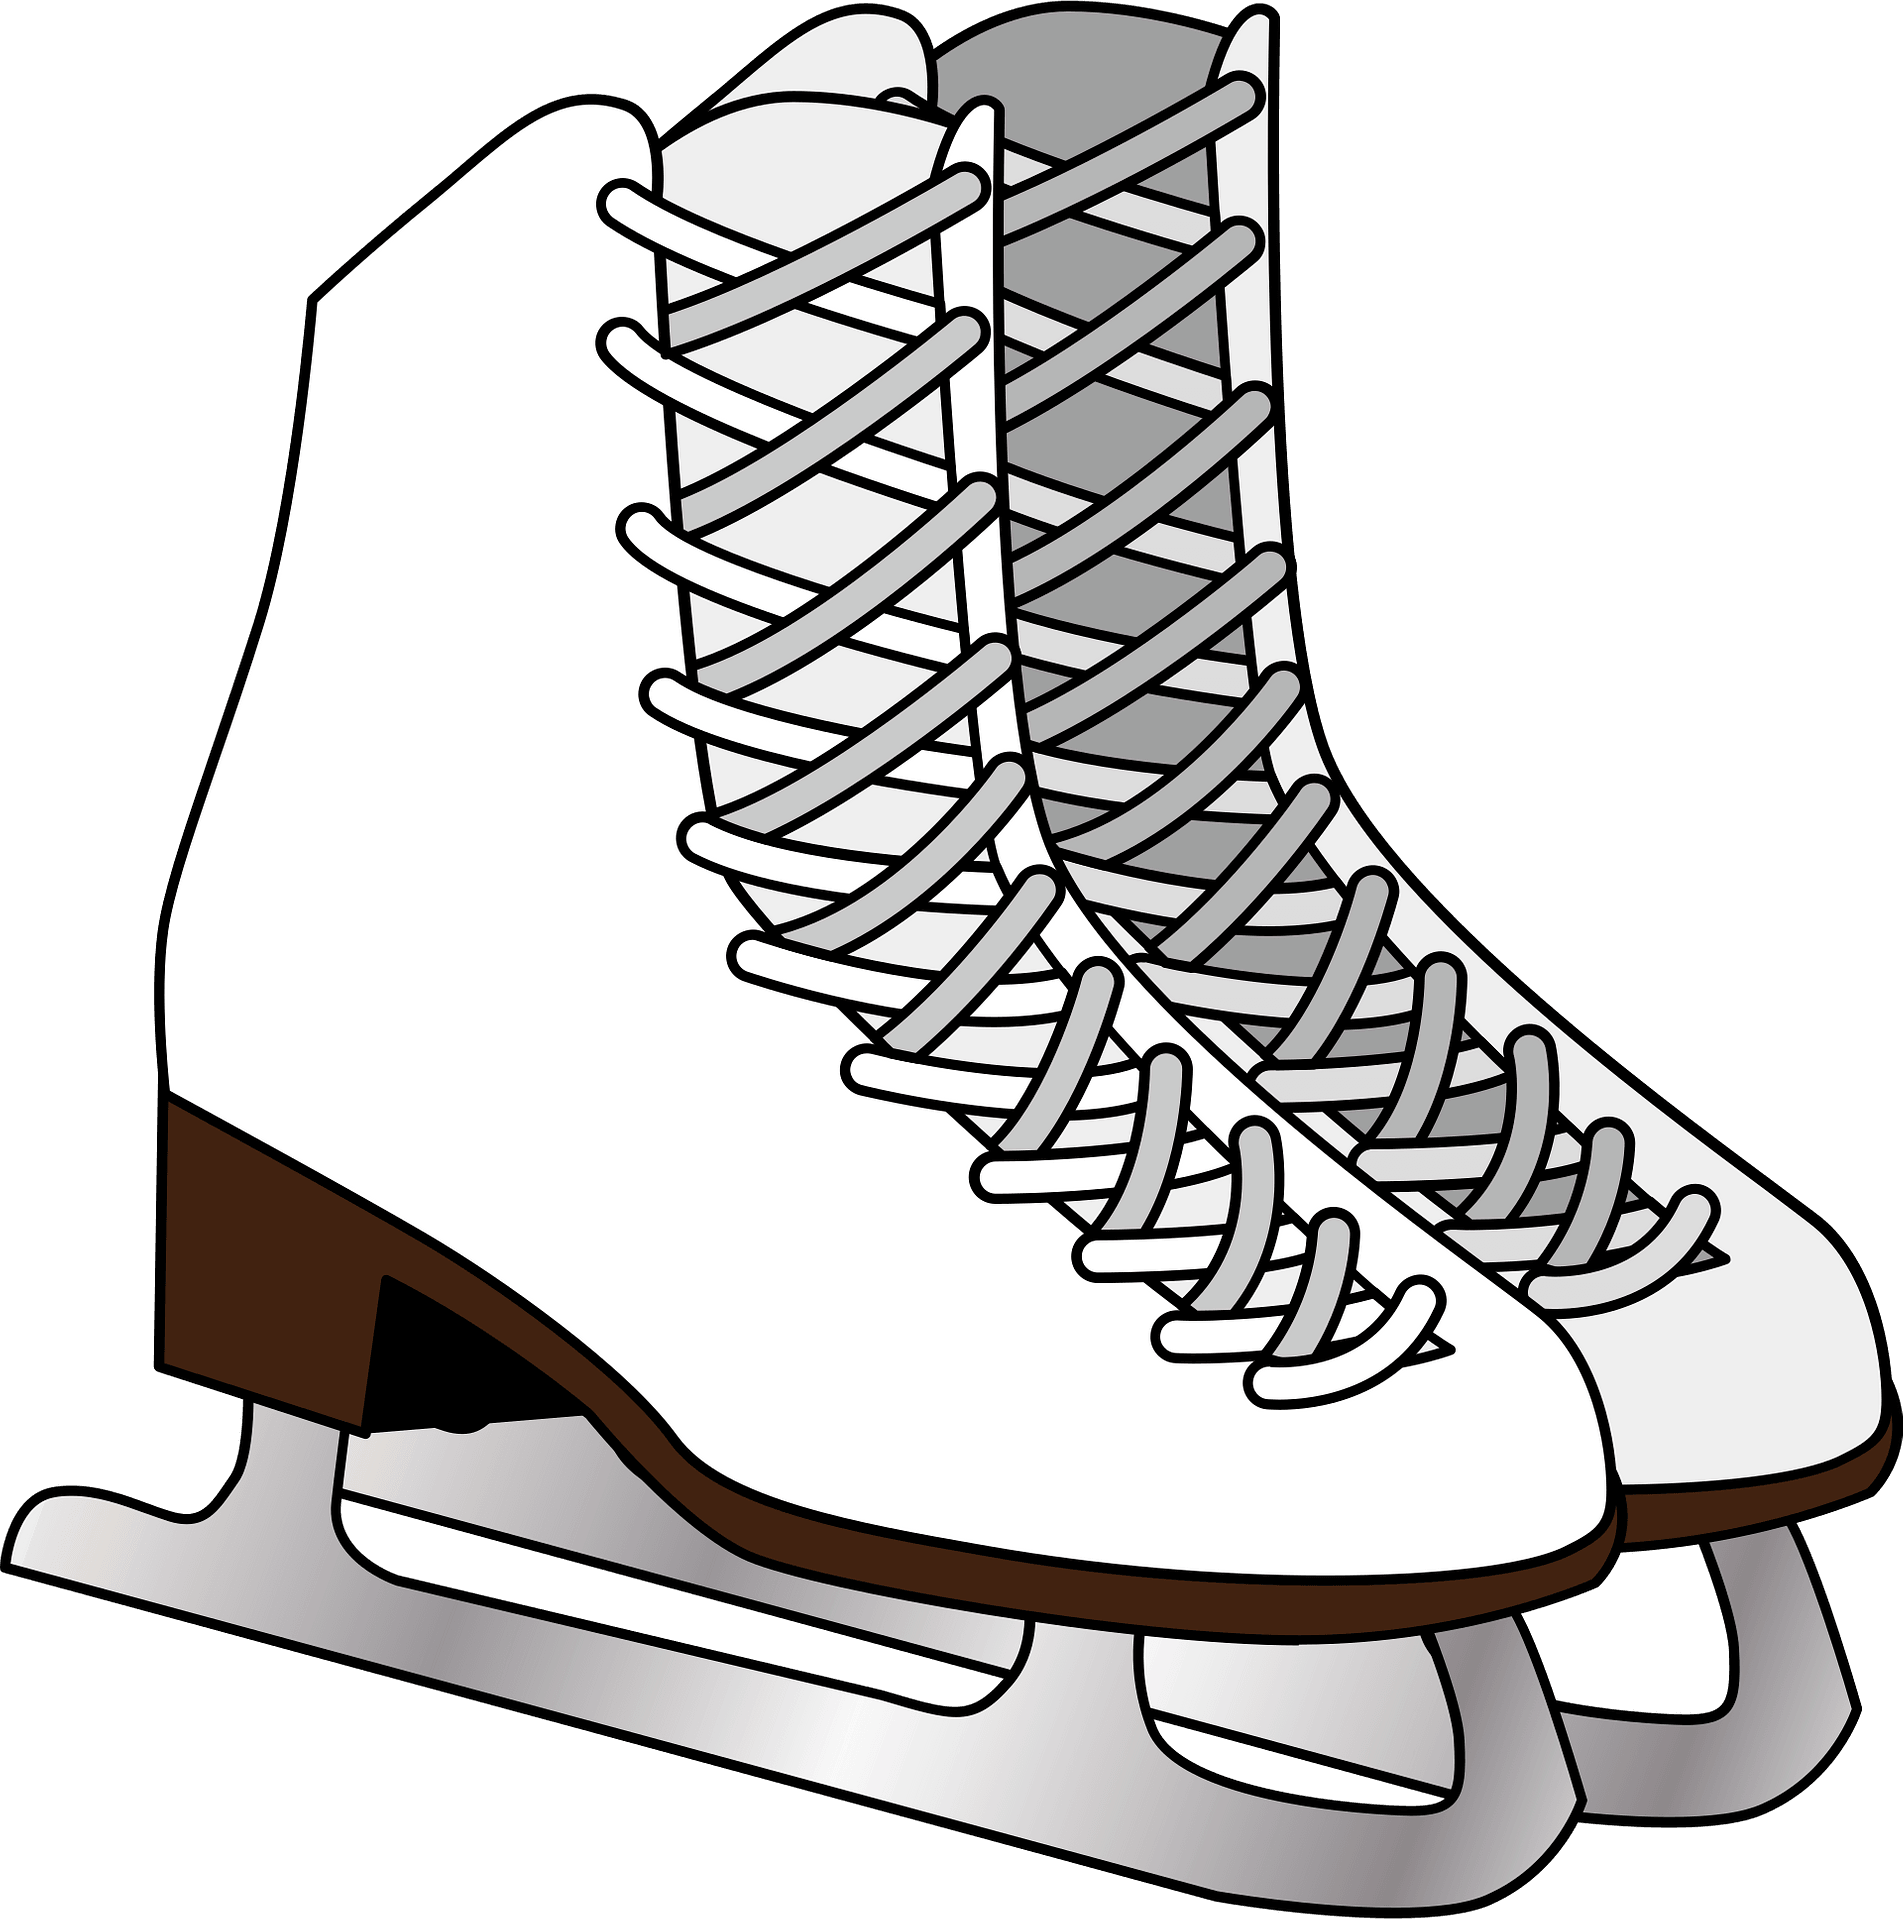 أحذية التزلج على الجليد الأبيض PNG